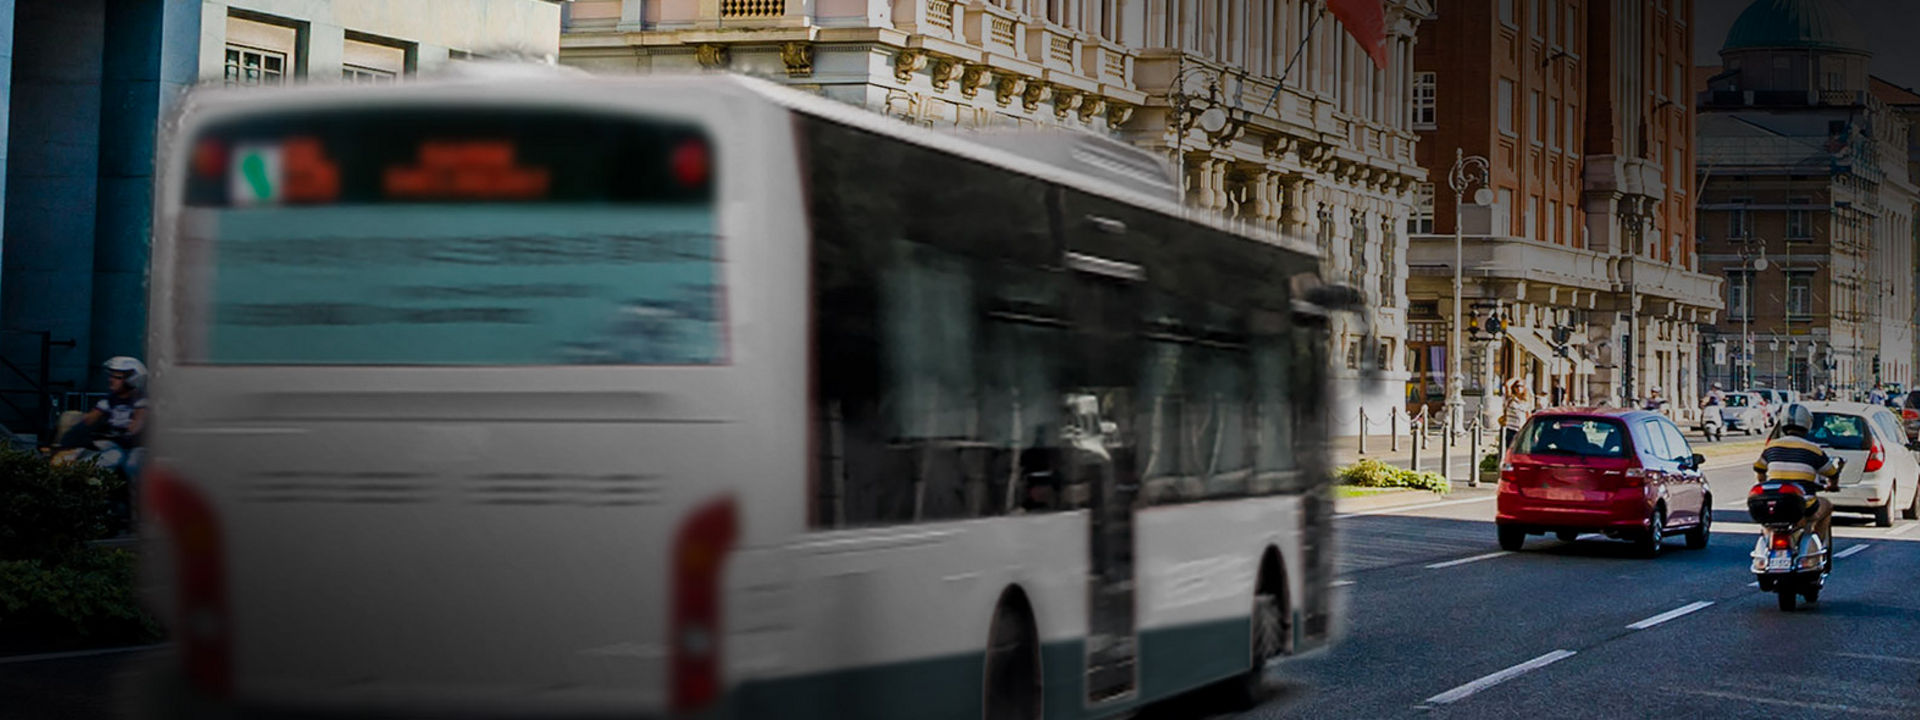 Questa immagine mostra il retro di un autobus con pneumatici Bridgestone in un centro cittadino